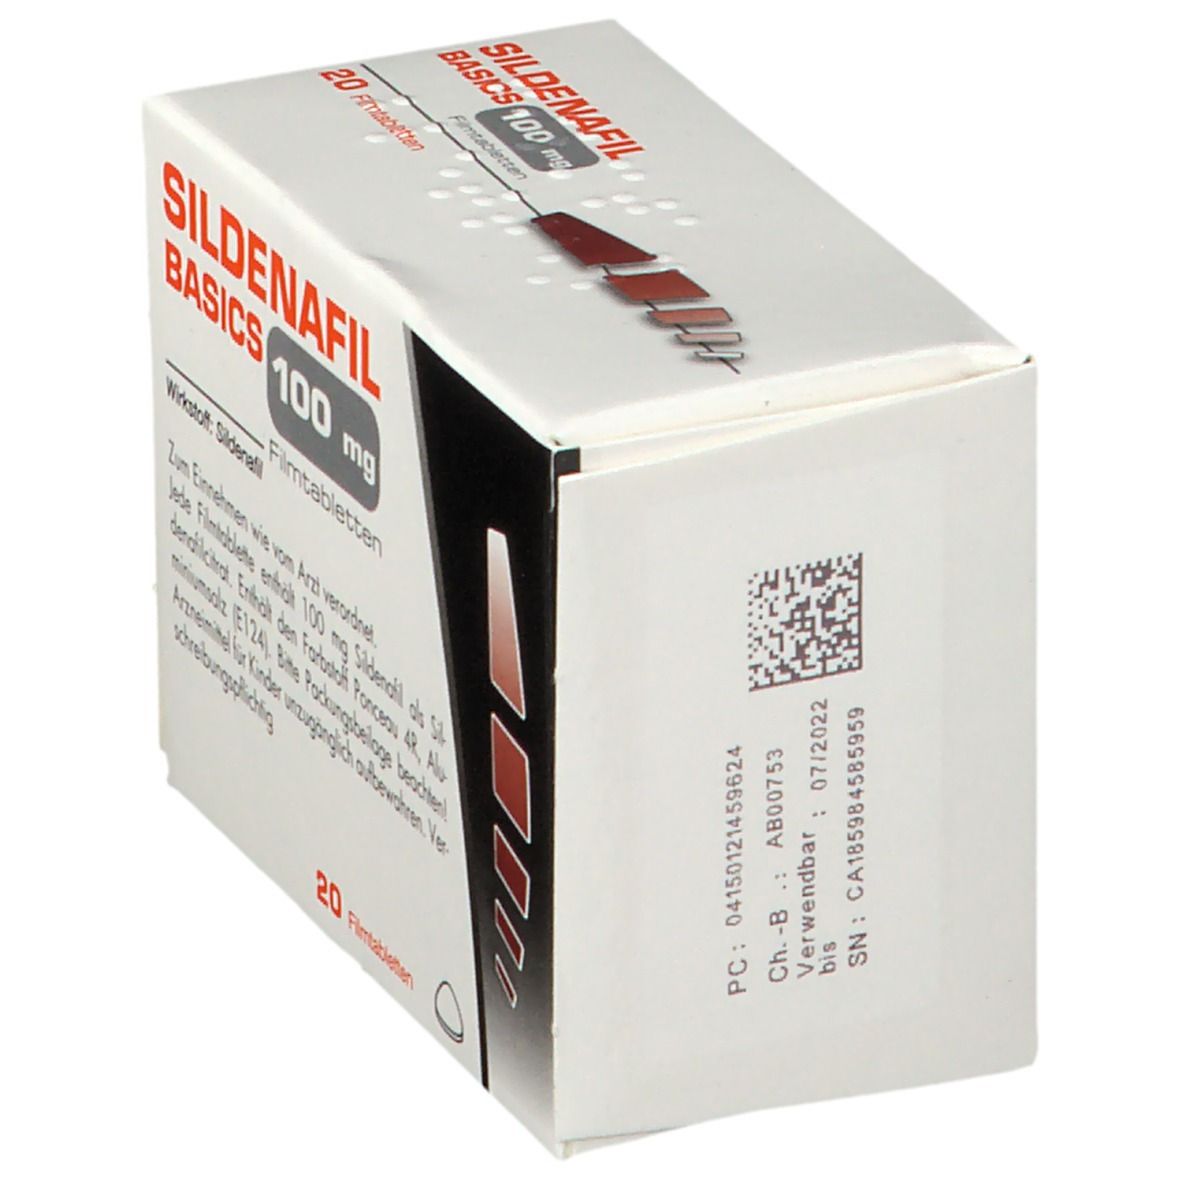 SILDENAFIL BASICS 100 mg